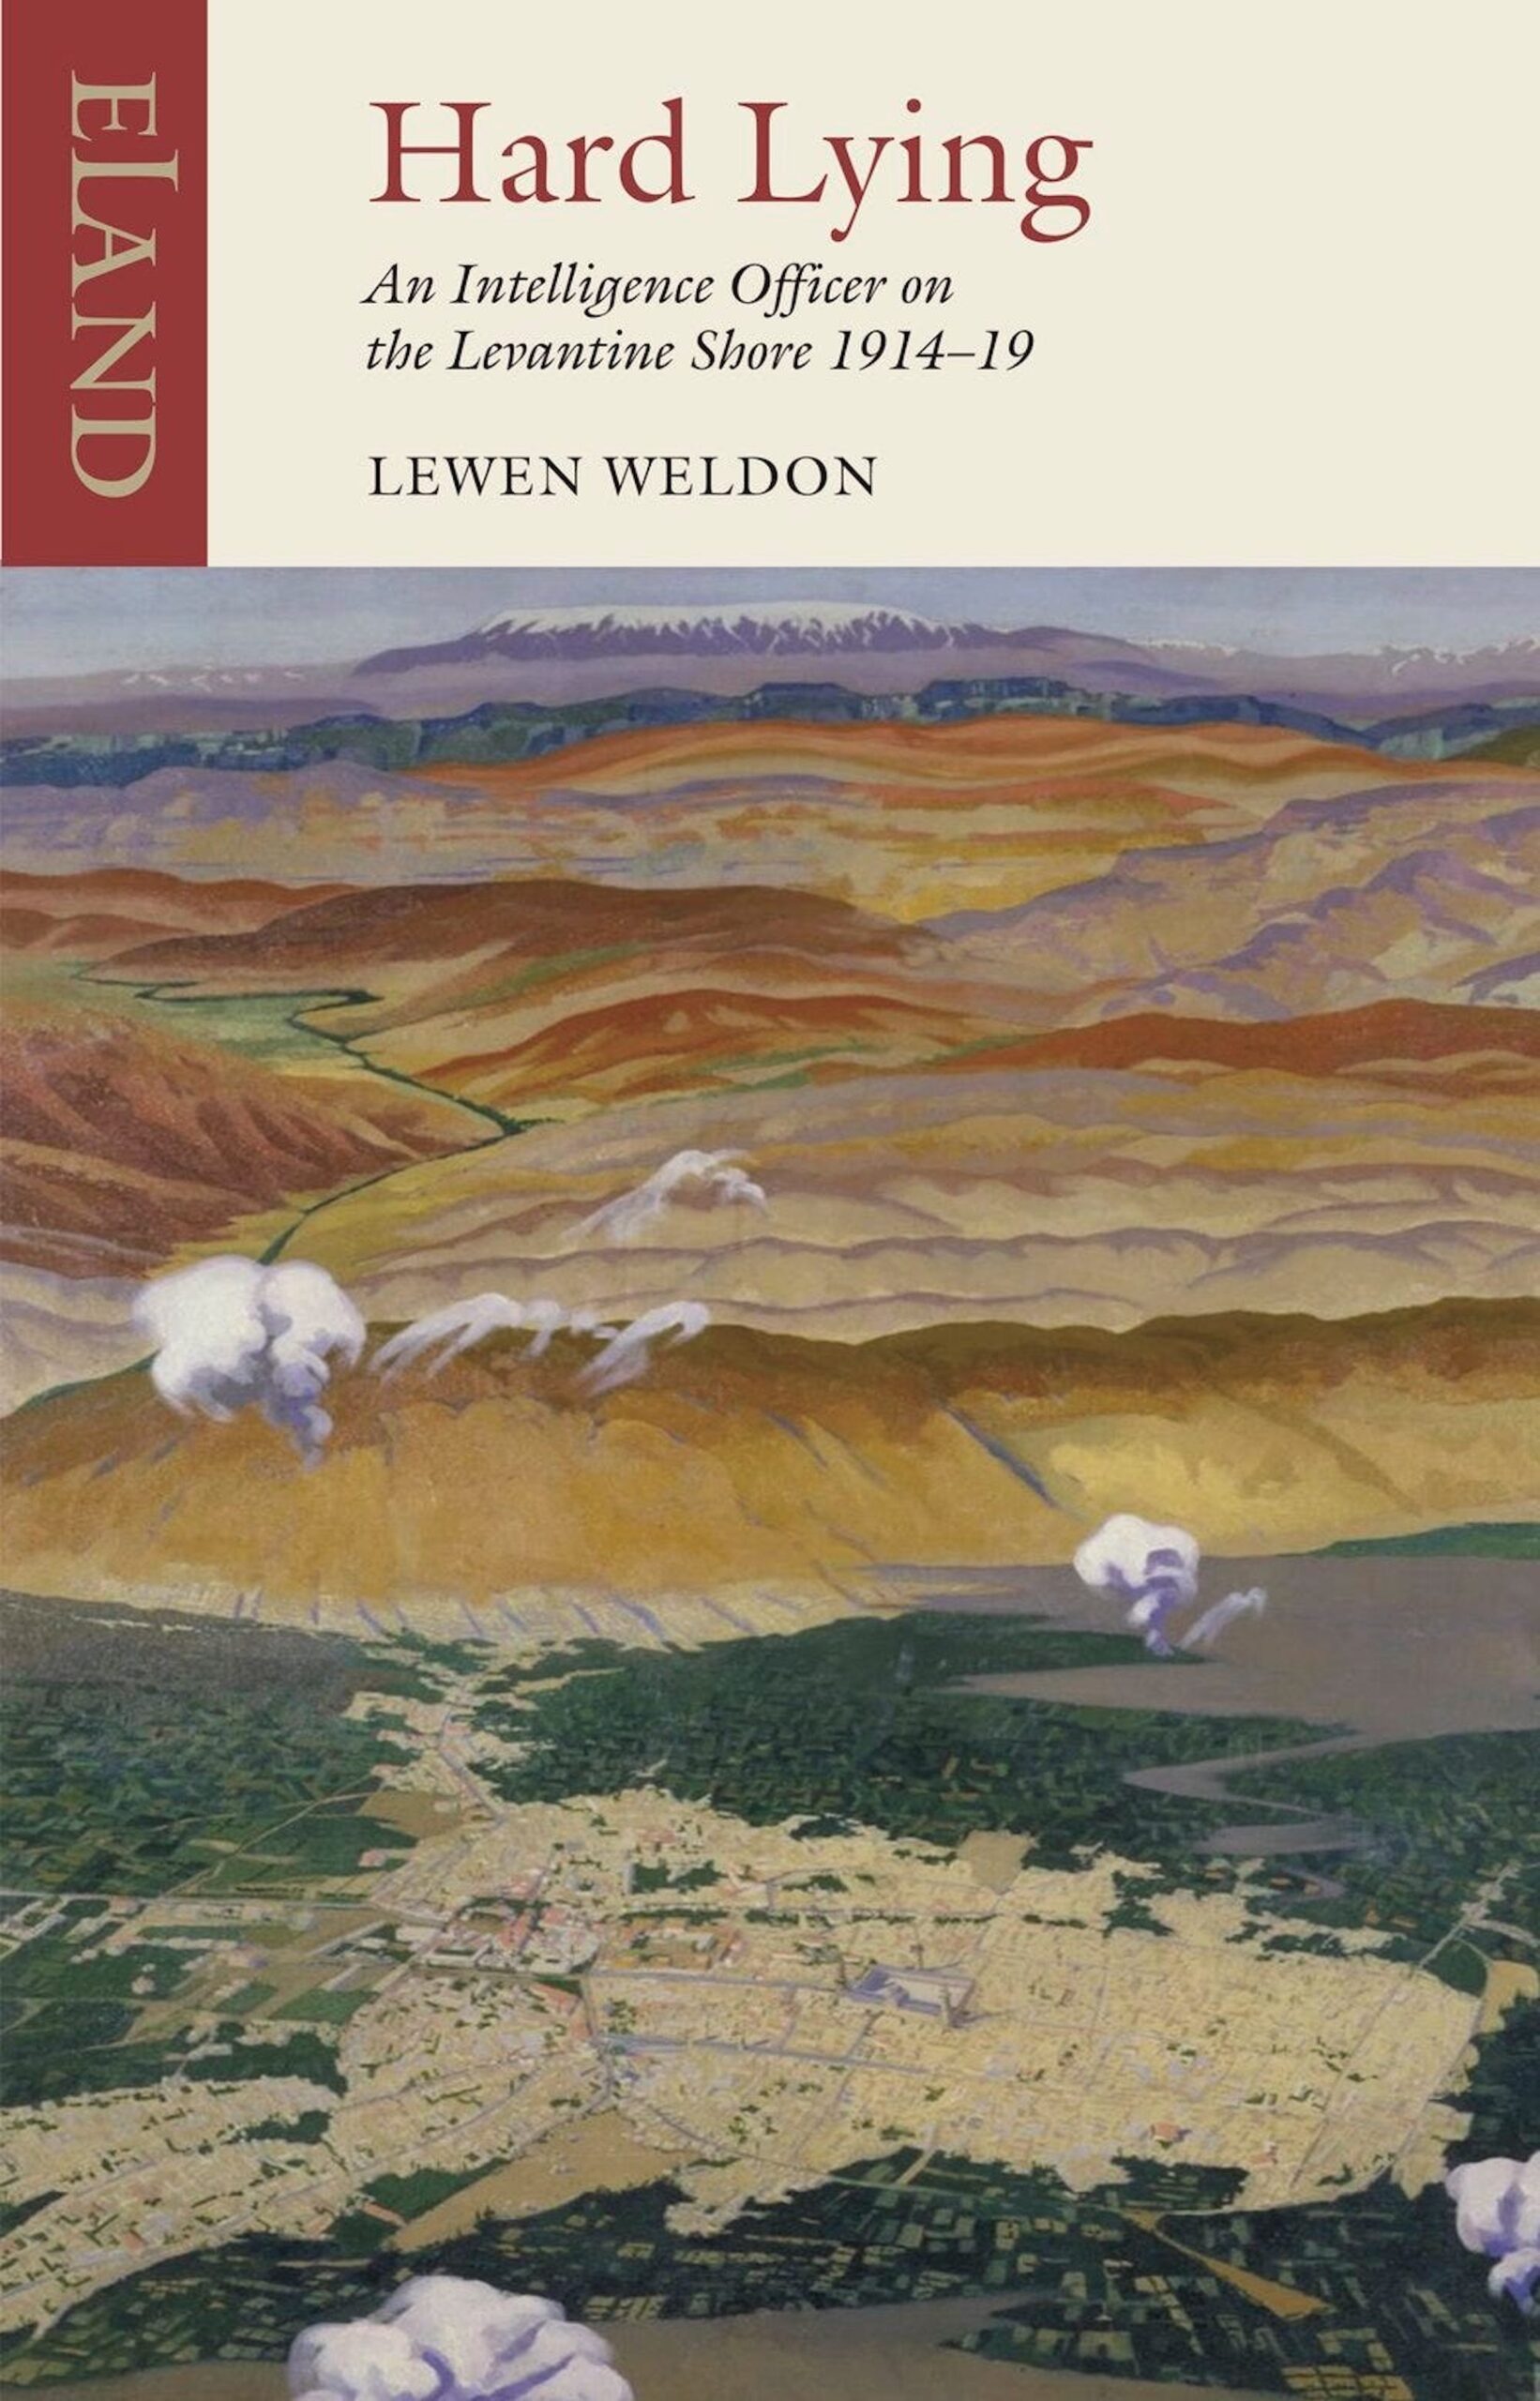 Hard Lying by Lewen Weldon